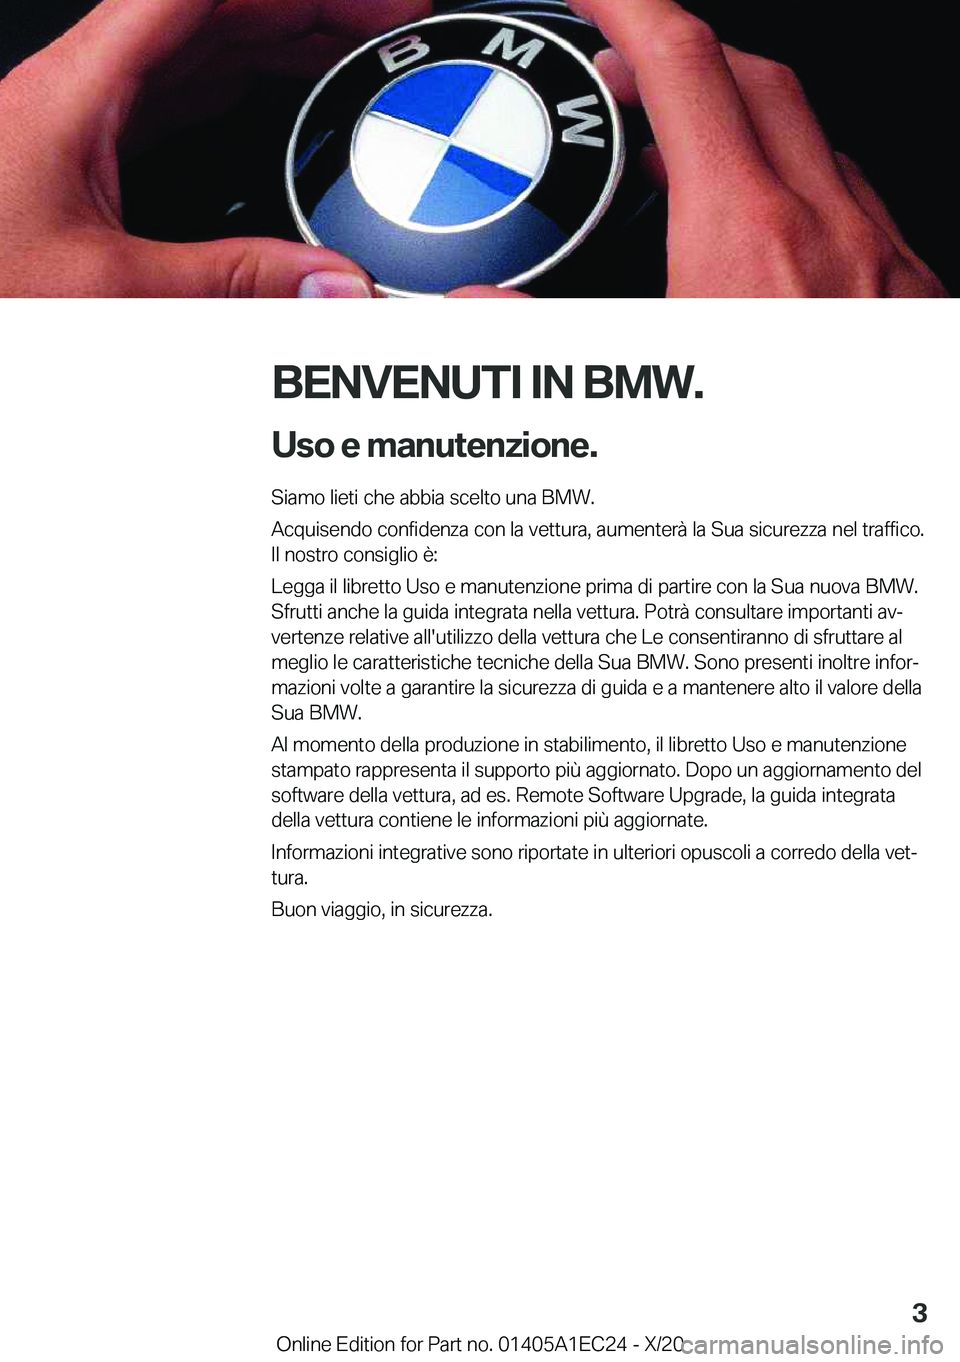 BMW 8 SERIES GRAN COUPE 2021  Libretti Di Uso E manutenzione (in Italian) �B�E�N�V�E�N�U�T�I��I�N��B�M�W�.�U�s�o��e��m�a�n�u�t�e�n�z�i�o�n�e�.
�S�i�a�m�o��l�i�e�t�i��c�h�e��a�b�b�i�a��s�c�e�l�t�o��u�n�a��B�M�W�.
�A�c�q�u�i�s�e�n�d�o��c�o�n�f�i�d�e�n�z�a��c�o�n�